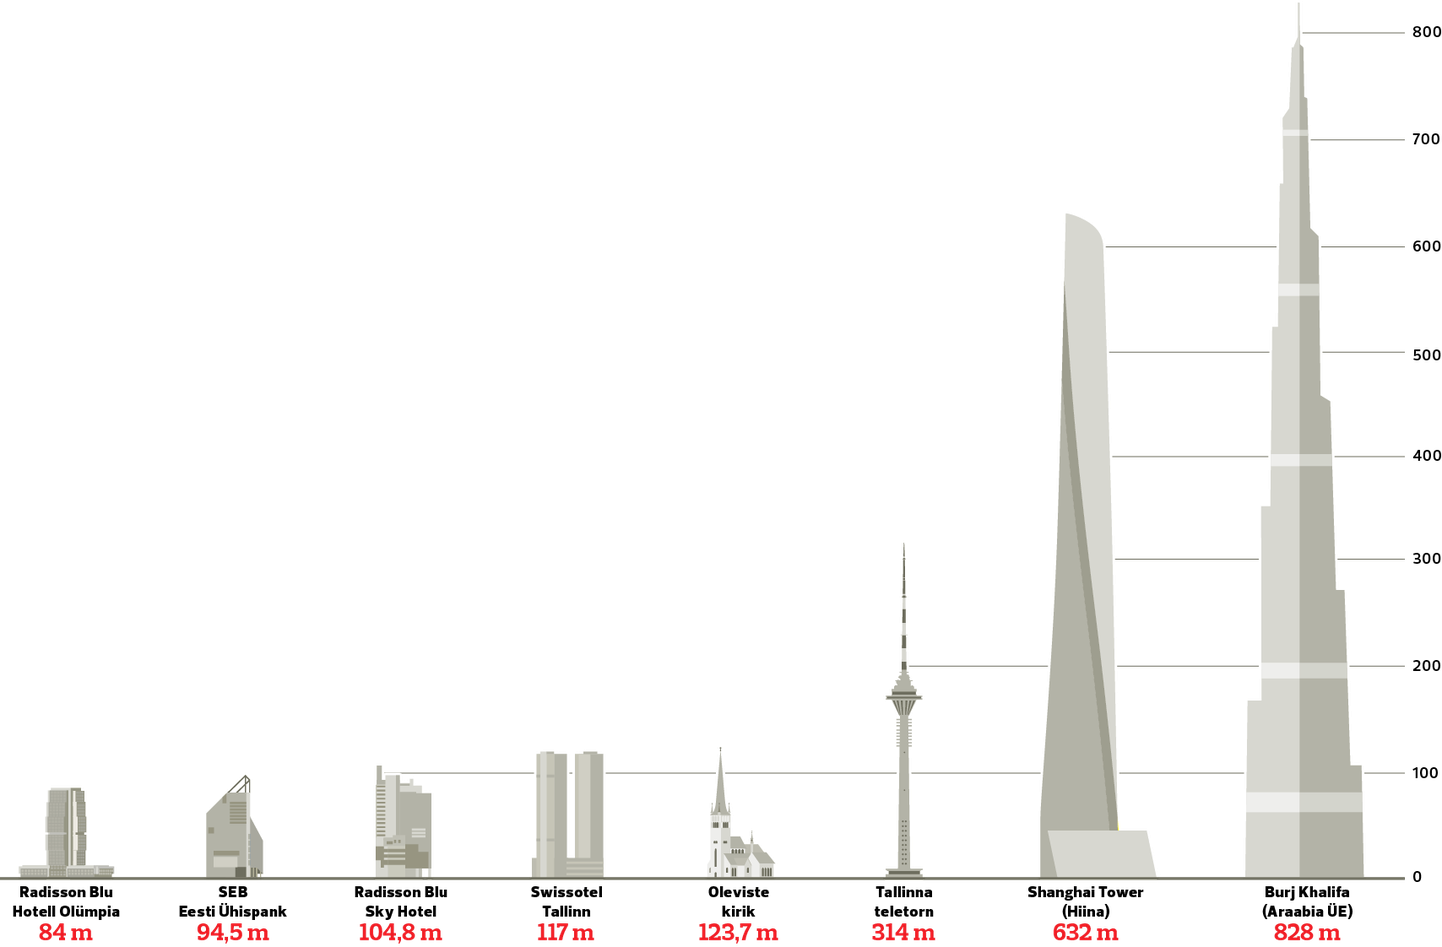 Tallinna kõrghooned ja maailma kõrgeimad pilvelõhkujad Burj Khalifa ning Shanghai Tower